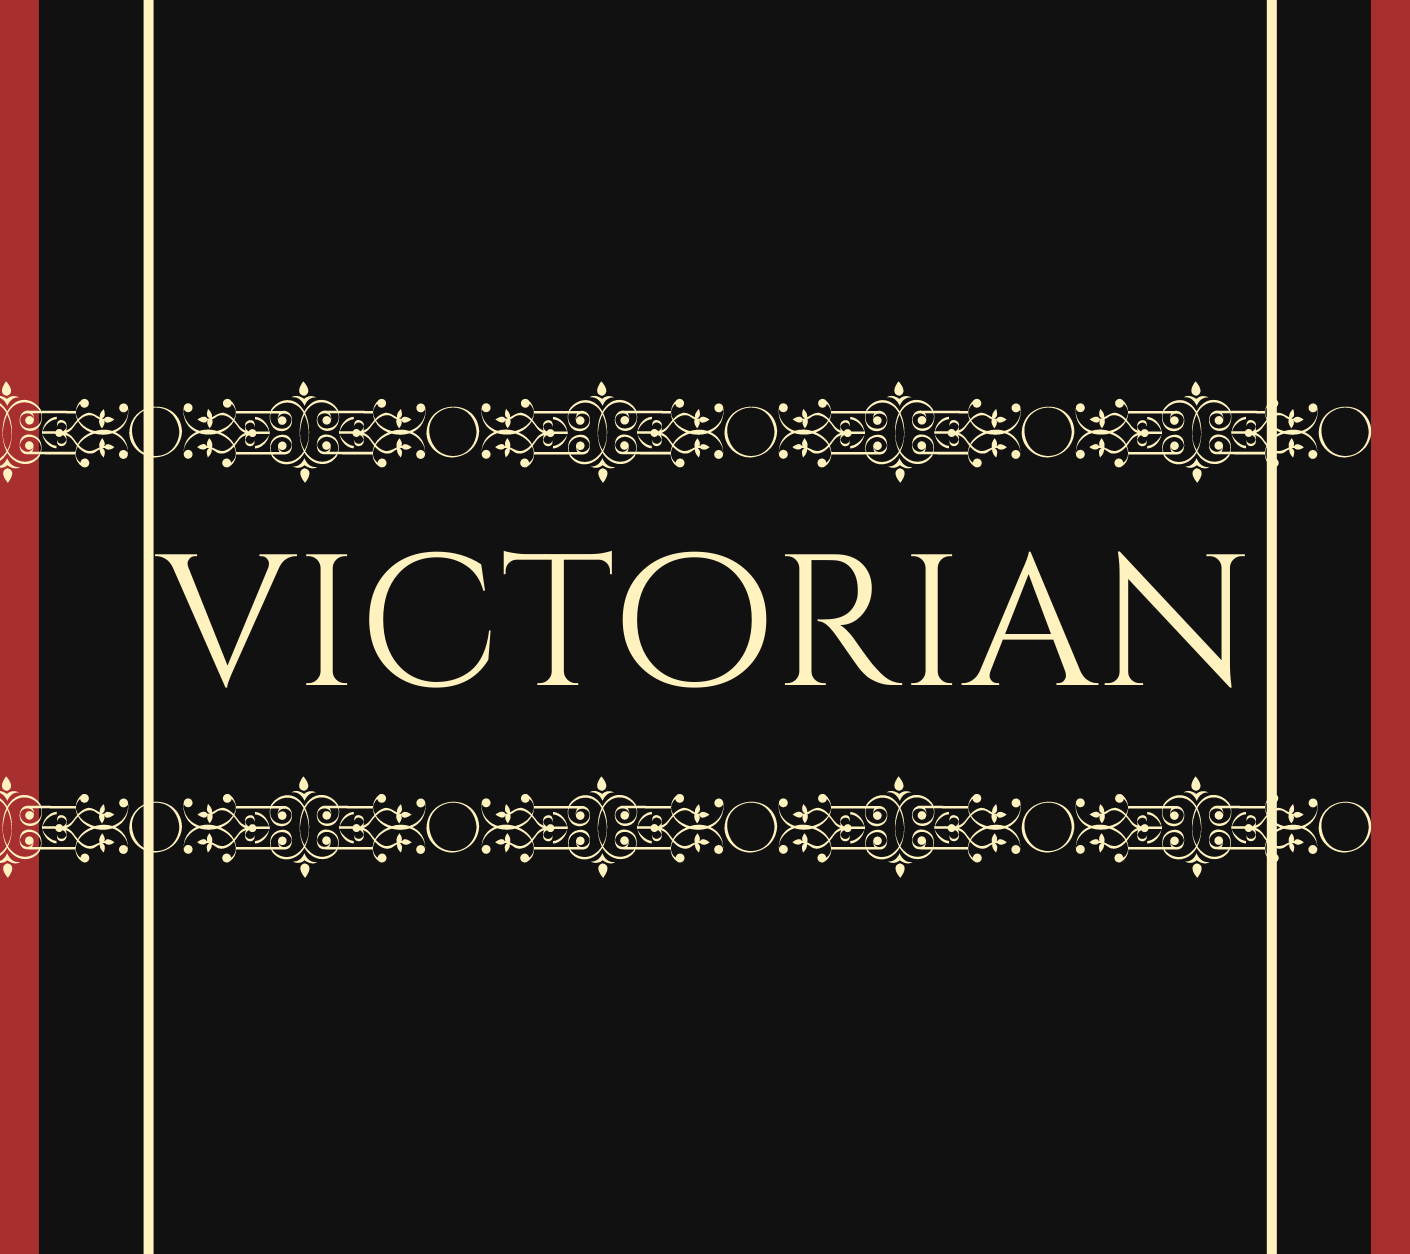 Victorian